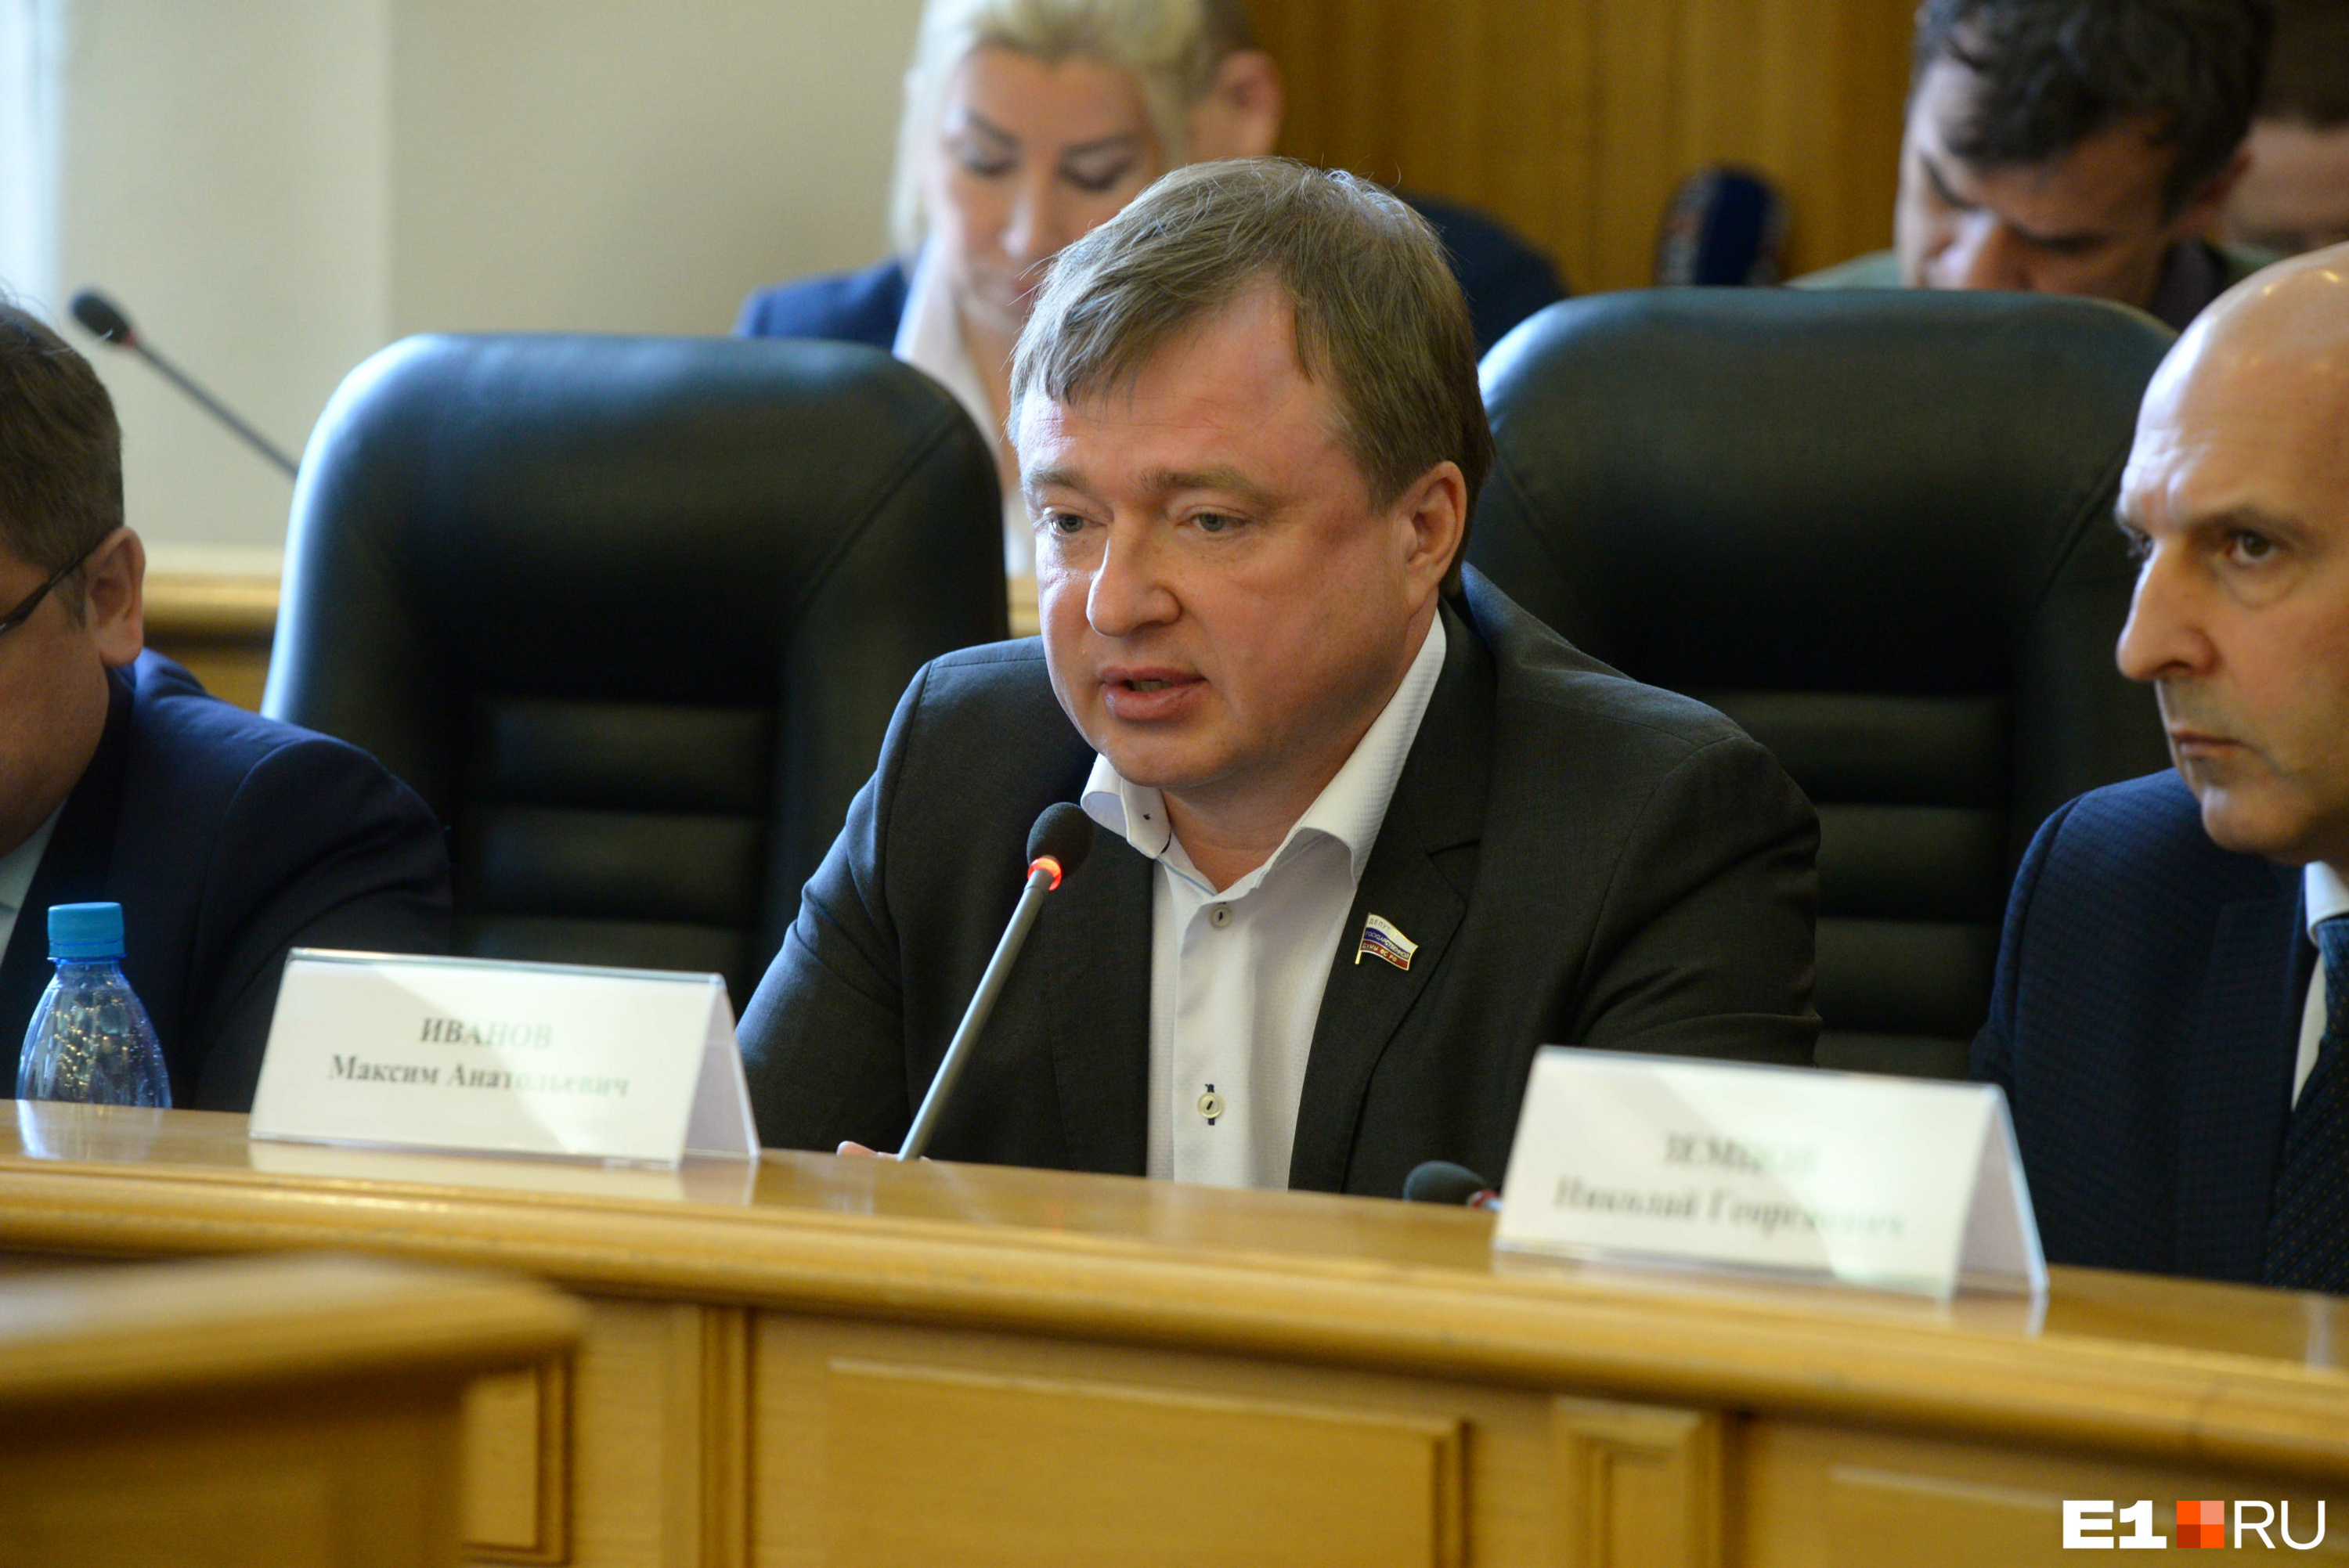 Максим Иванов выиграл выборы депутатов Госдумы во второй раз подряд